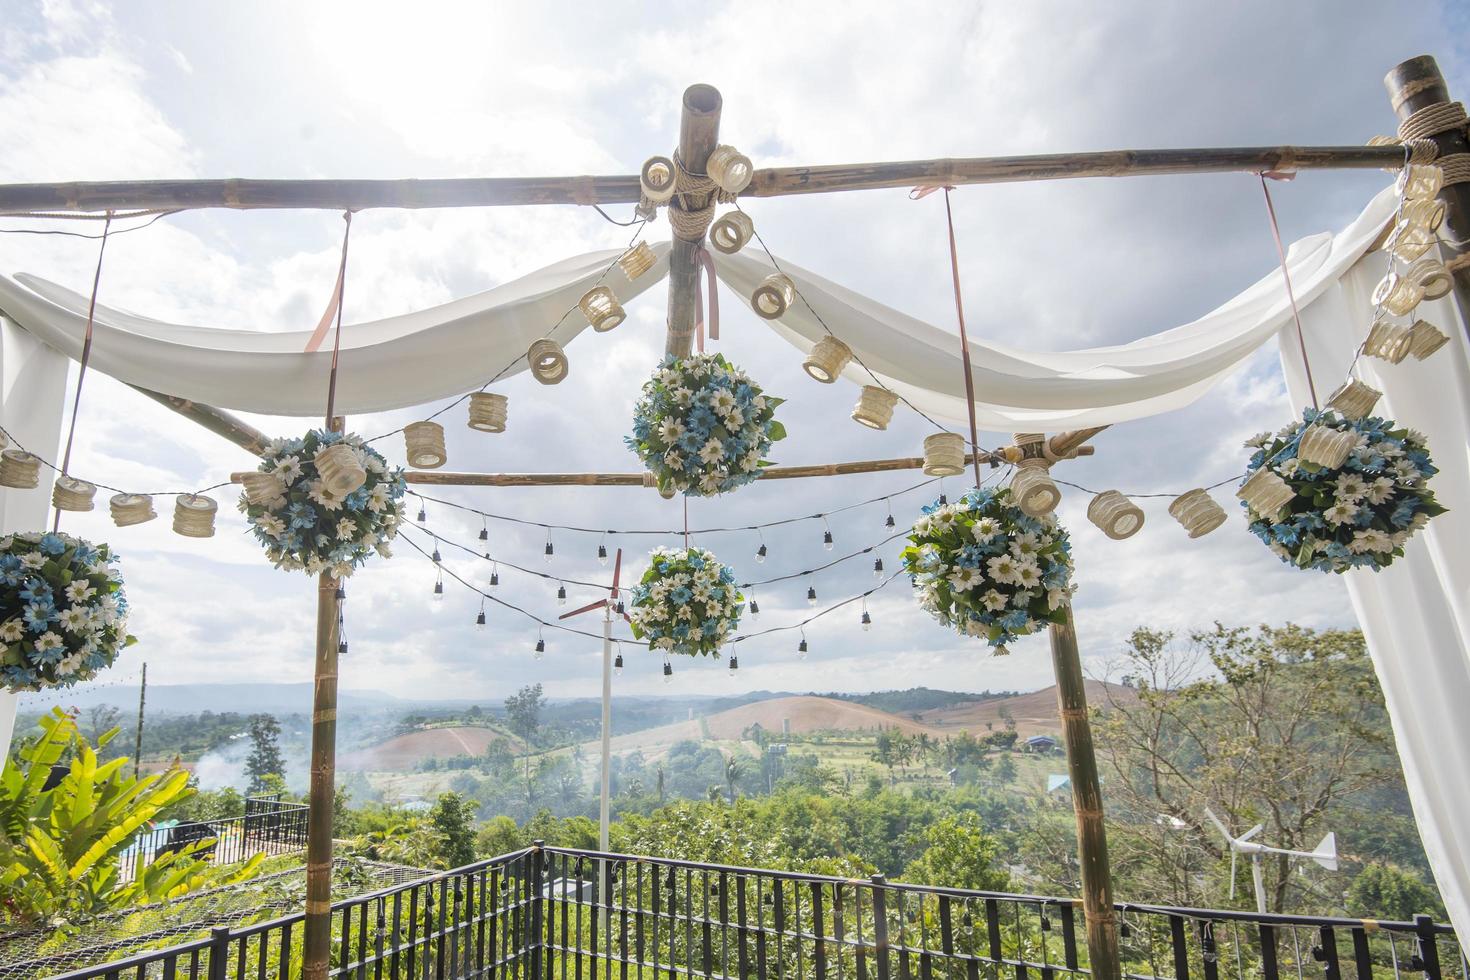 bruiloft achtergrond met bloem en bruiloft decoratie foto